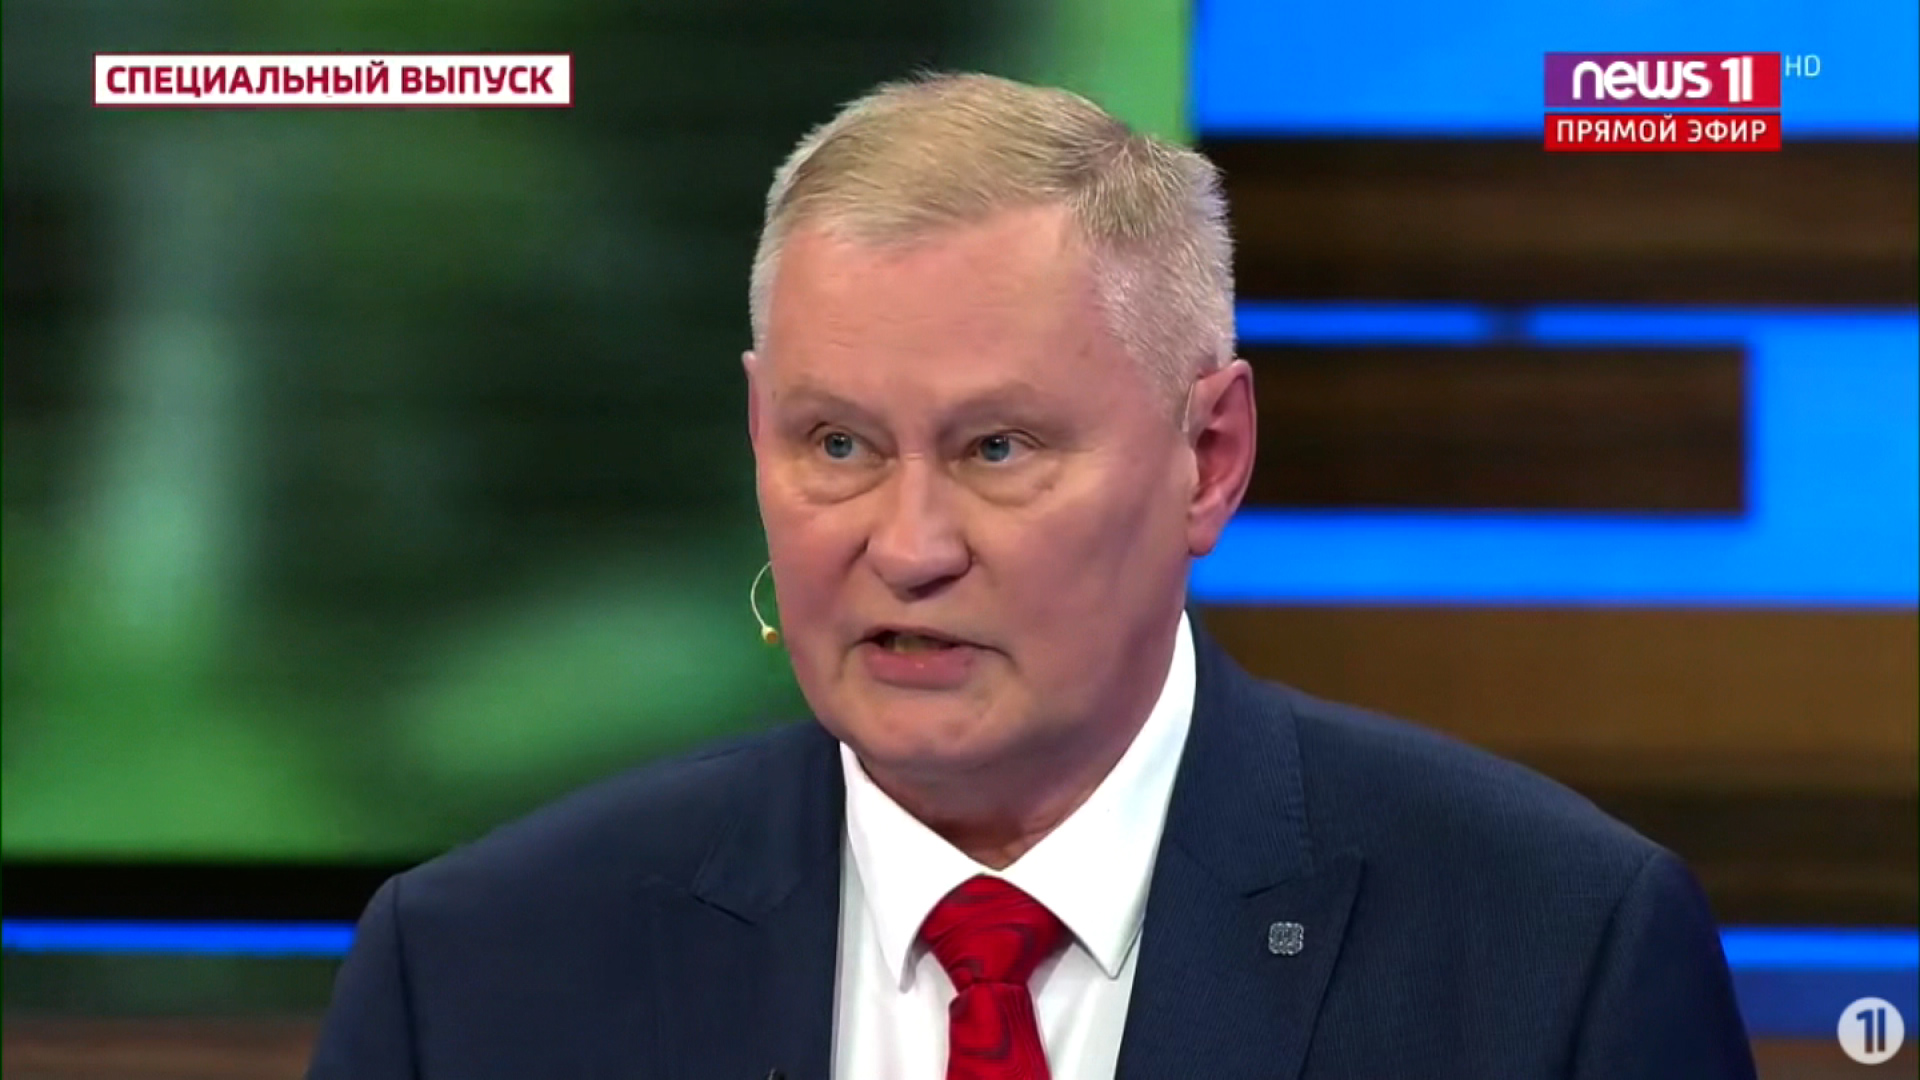 العقيد الروسي المتقاعد ميخائيل خودارينوك يتحدث في التلفزيون الرسمي الروسي يوم الأربعاء.